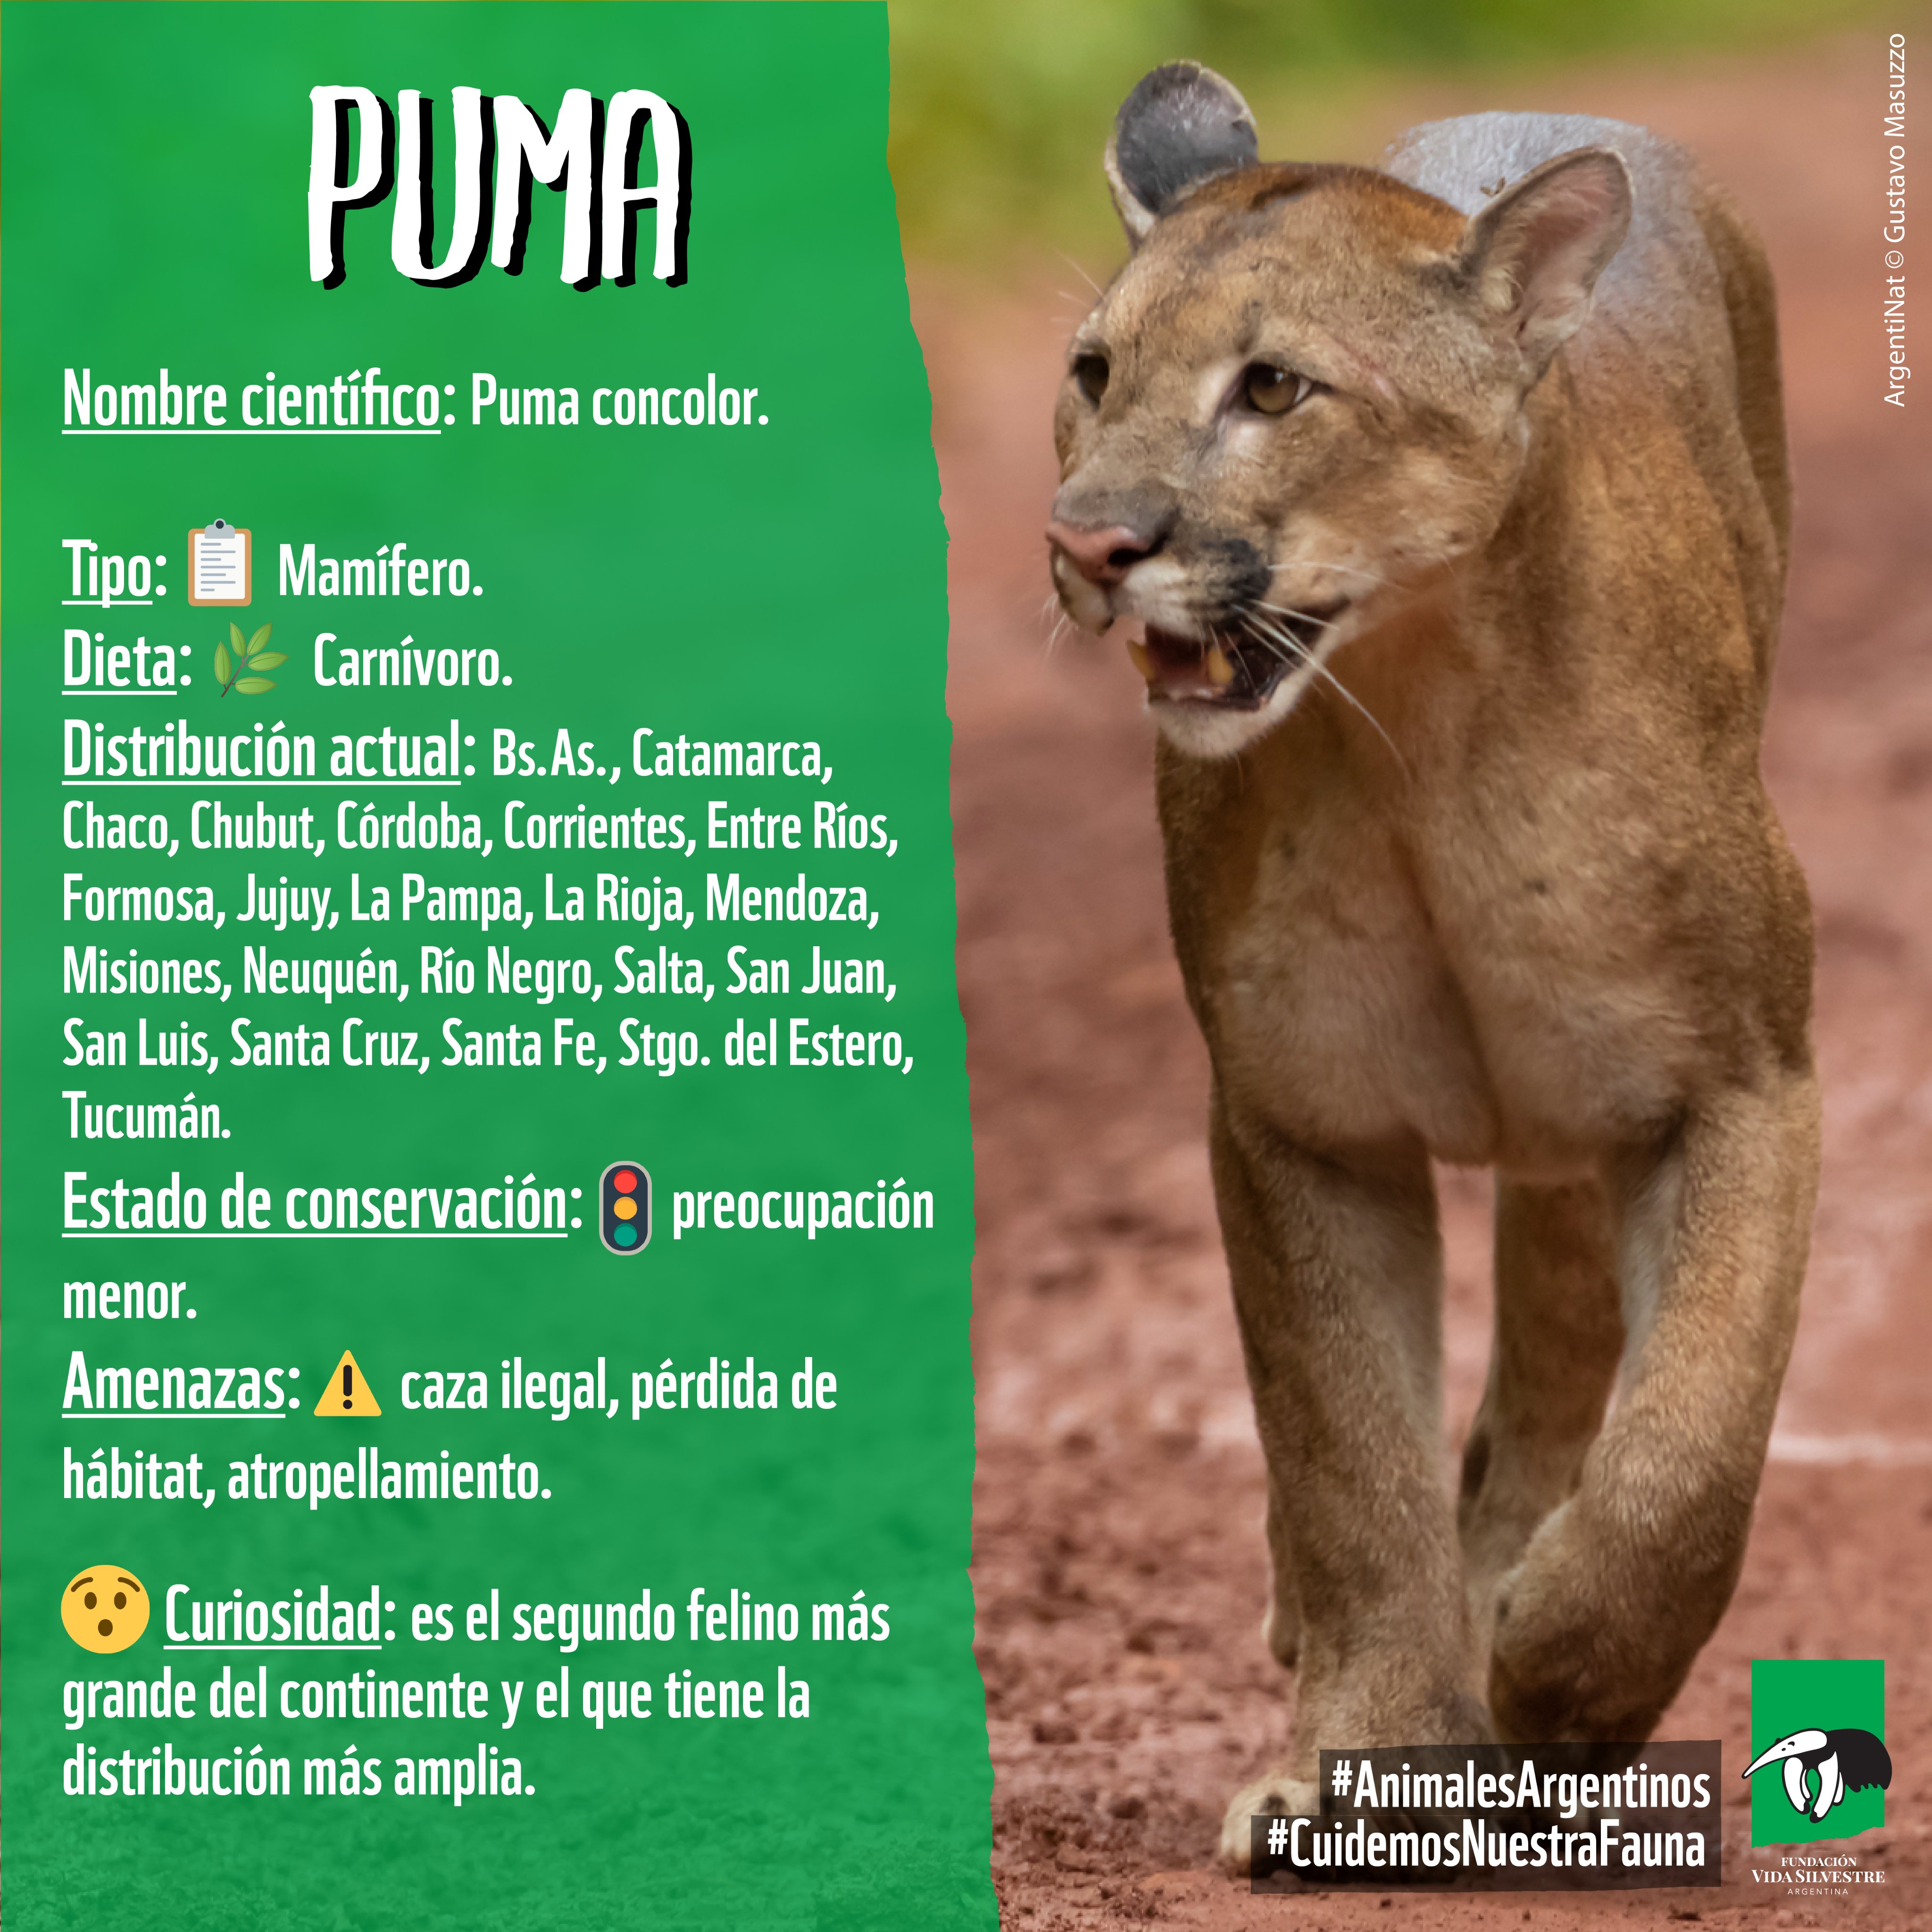 Fundación Vida Silvestre 🇦🇷 on Twitter: "⚠️ A pesar de que su estado de conservación es de preocupación menor (#SAREM), puma se encuentra amenazado por la cacería ilegal, el #atropellamiento y